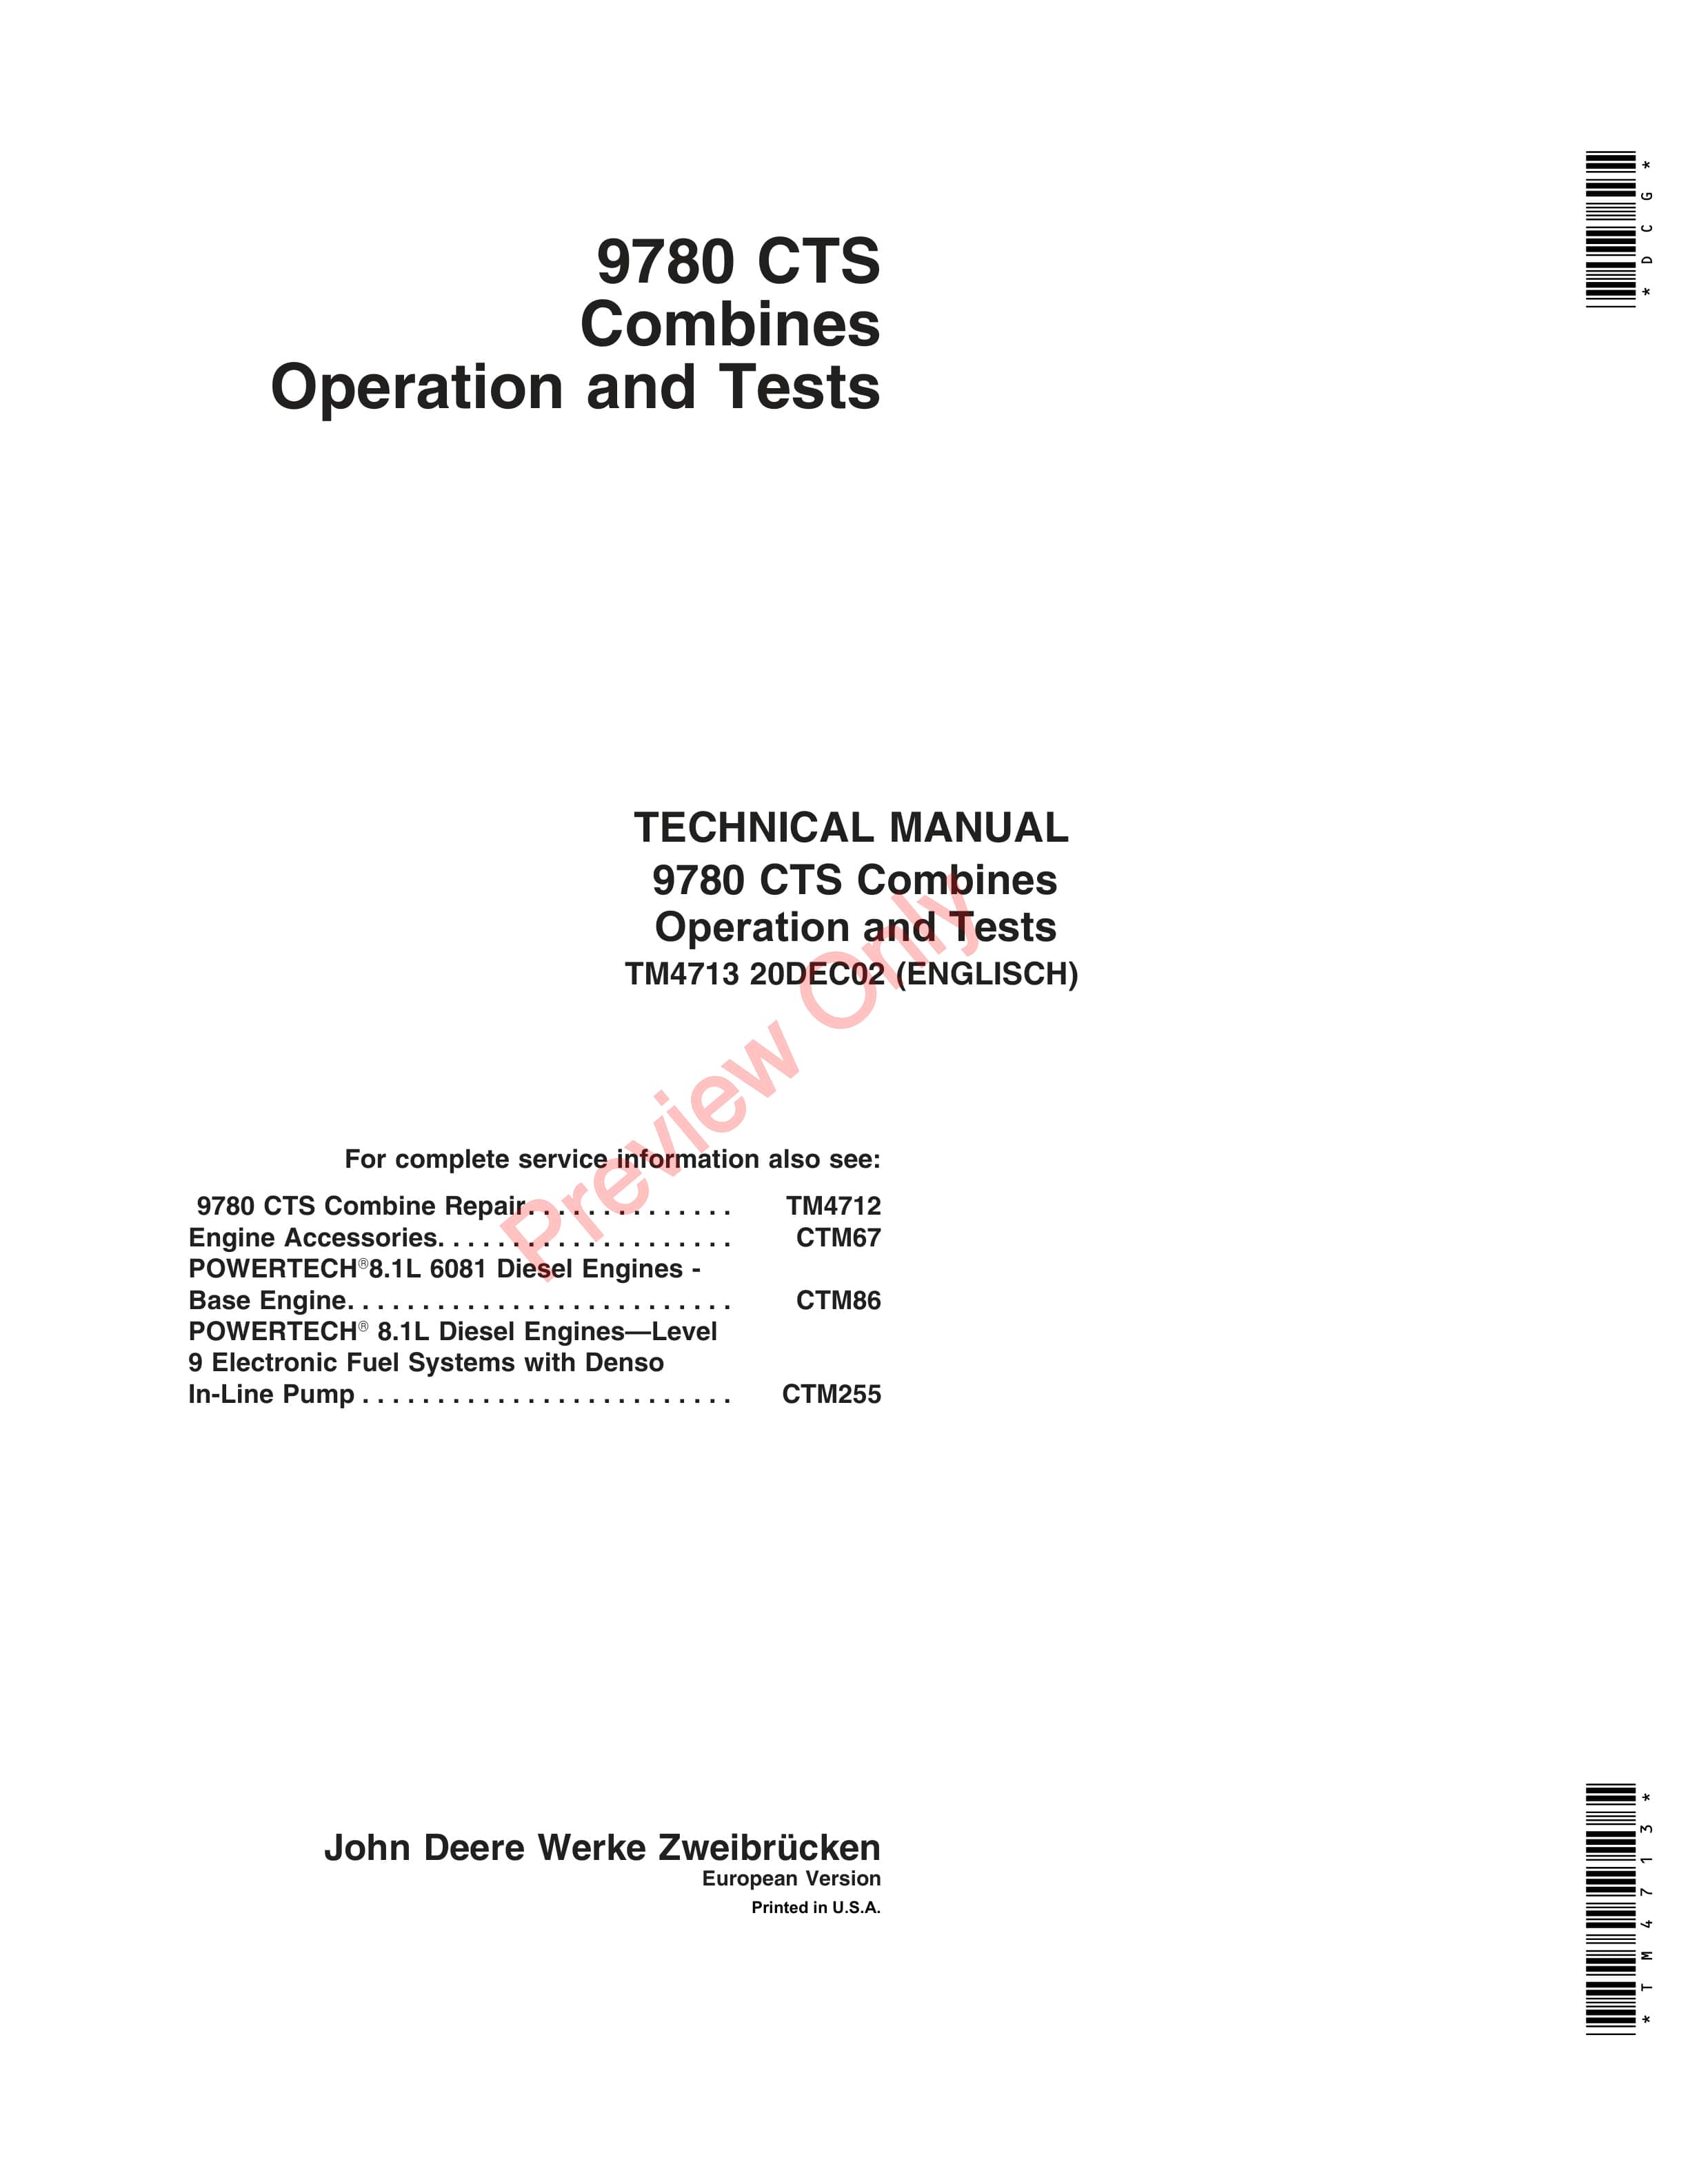 John Deere 9780 CTS Combines Technical Manual TM4713 20DEC02 1